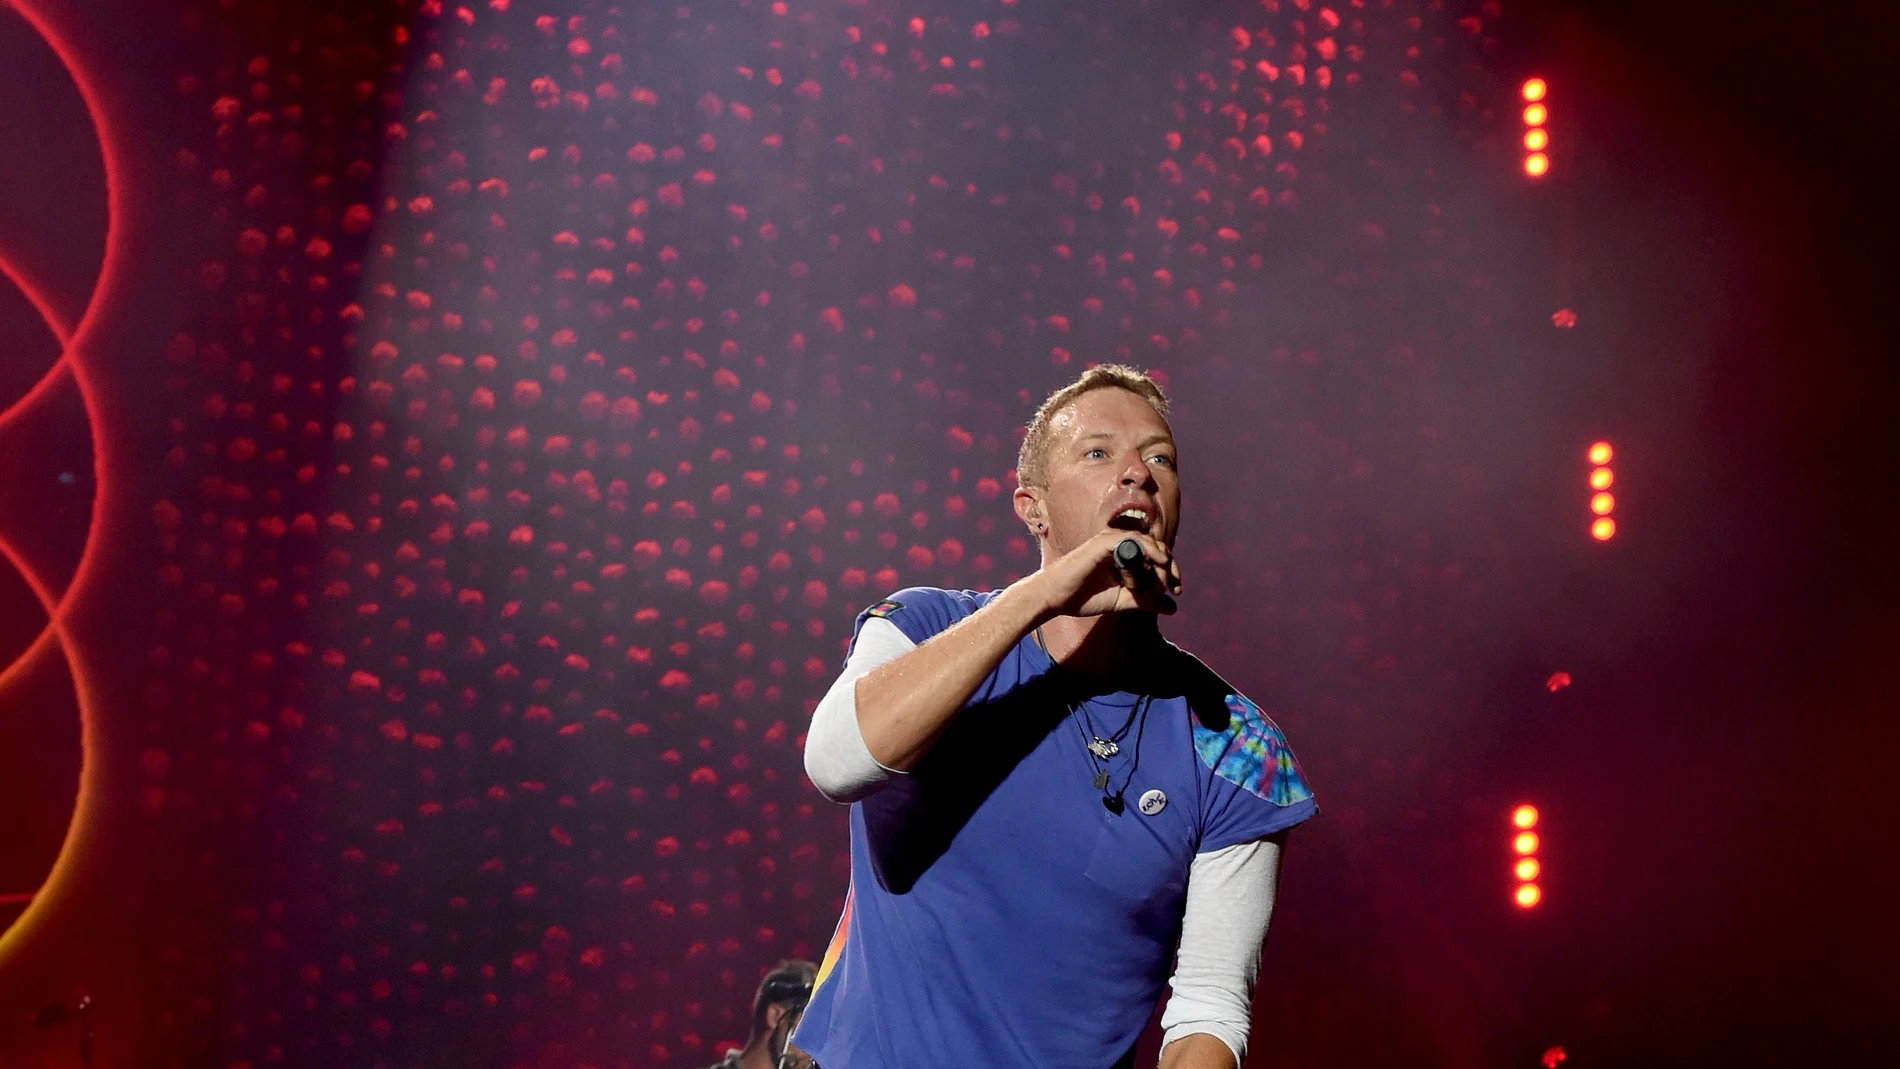 El show de Coldplay en la Super Bowl de 2016